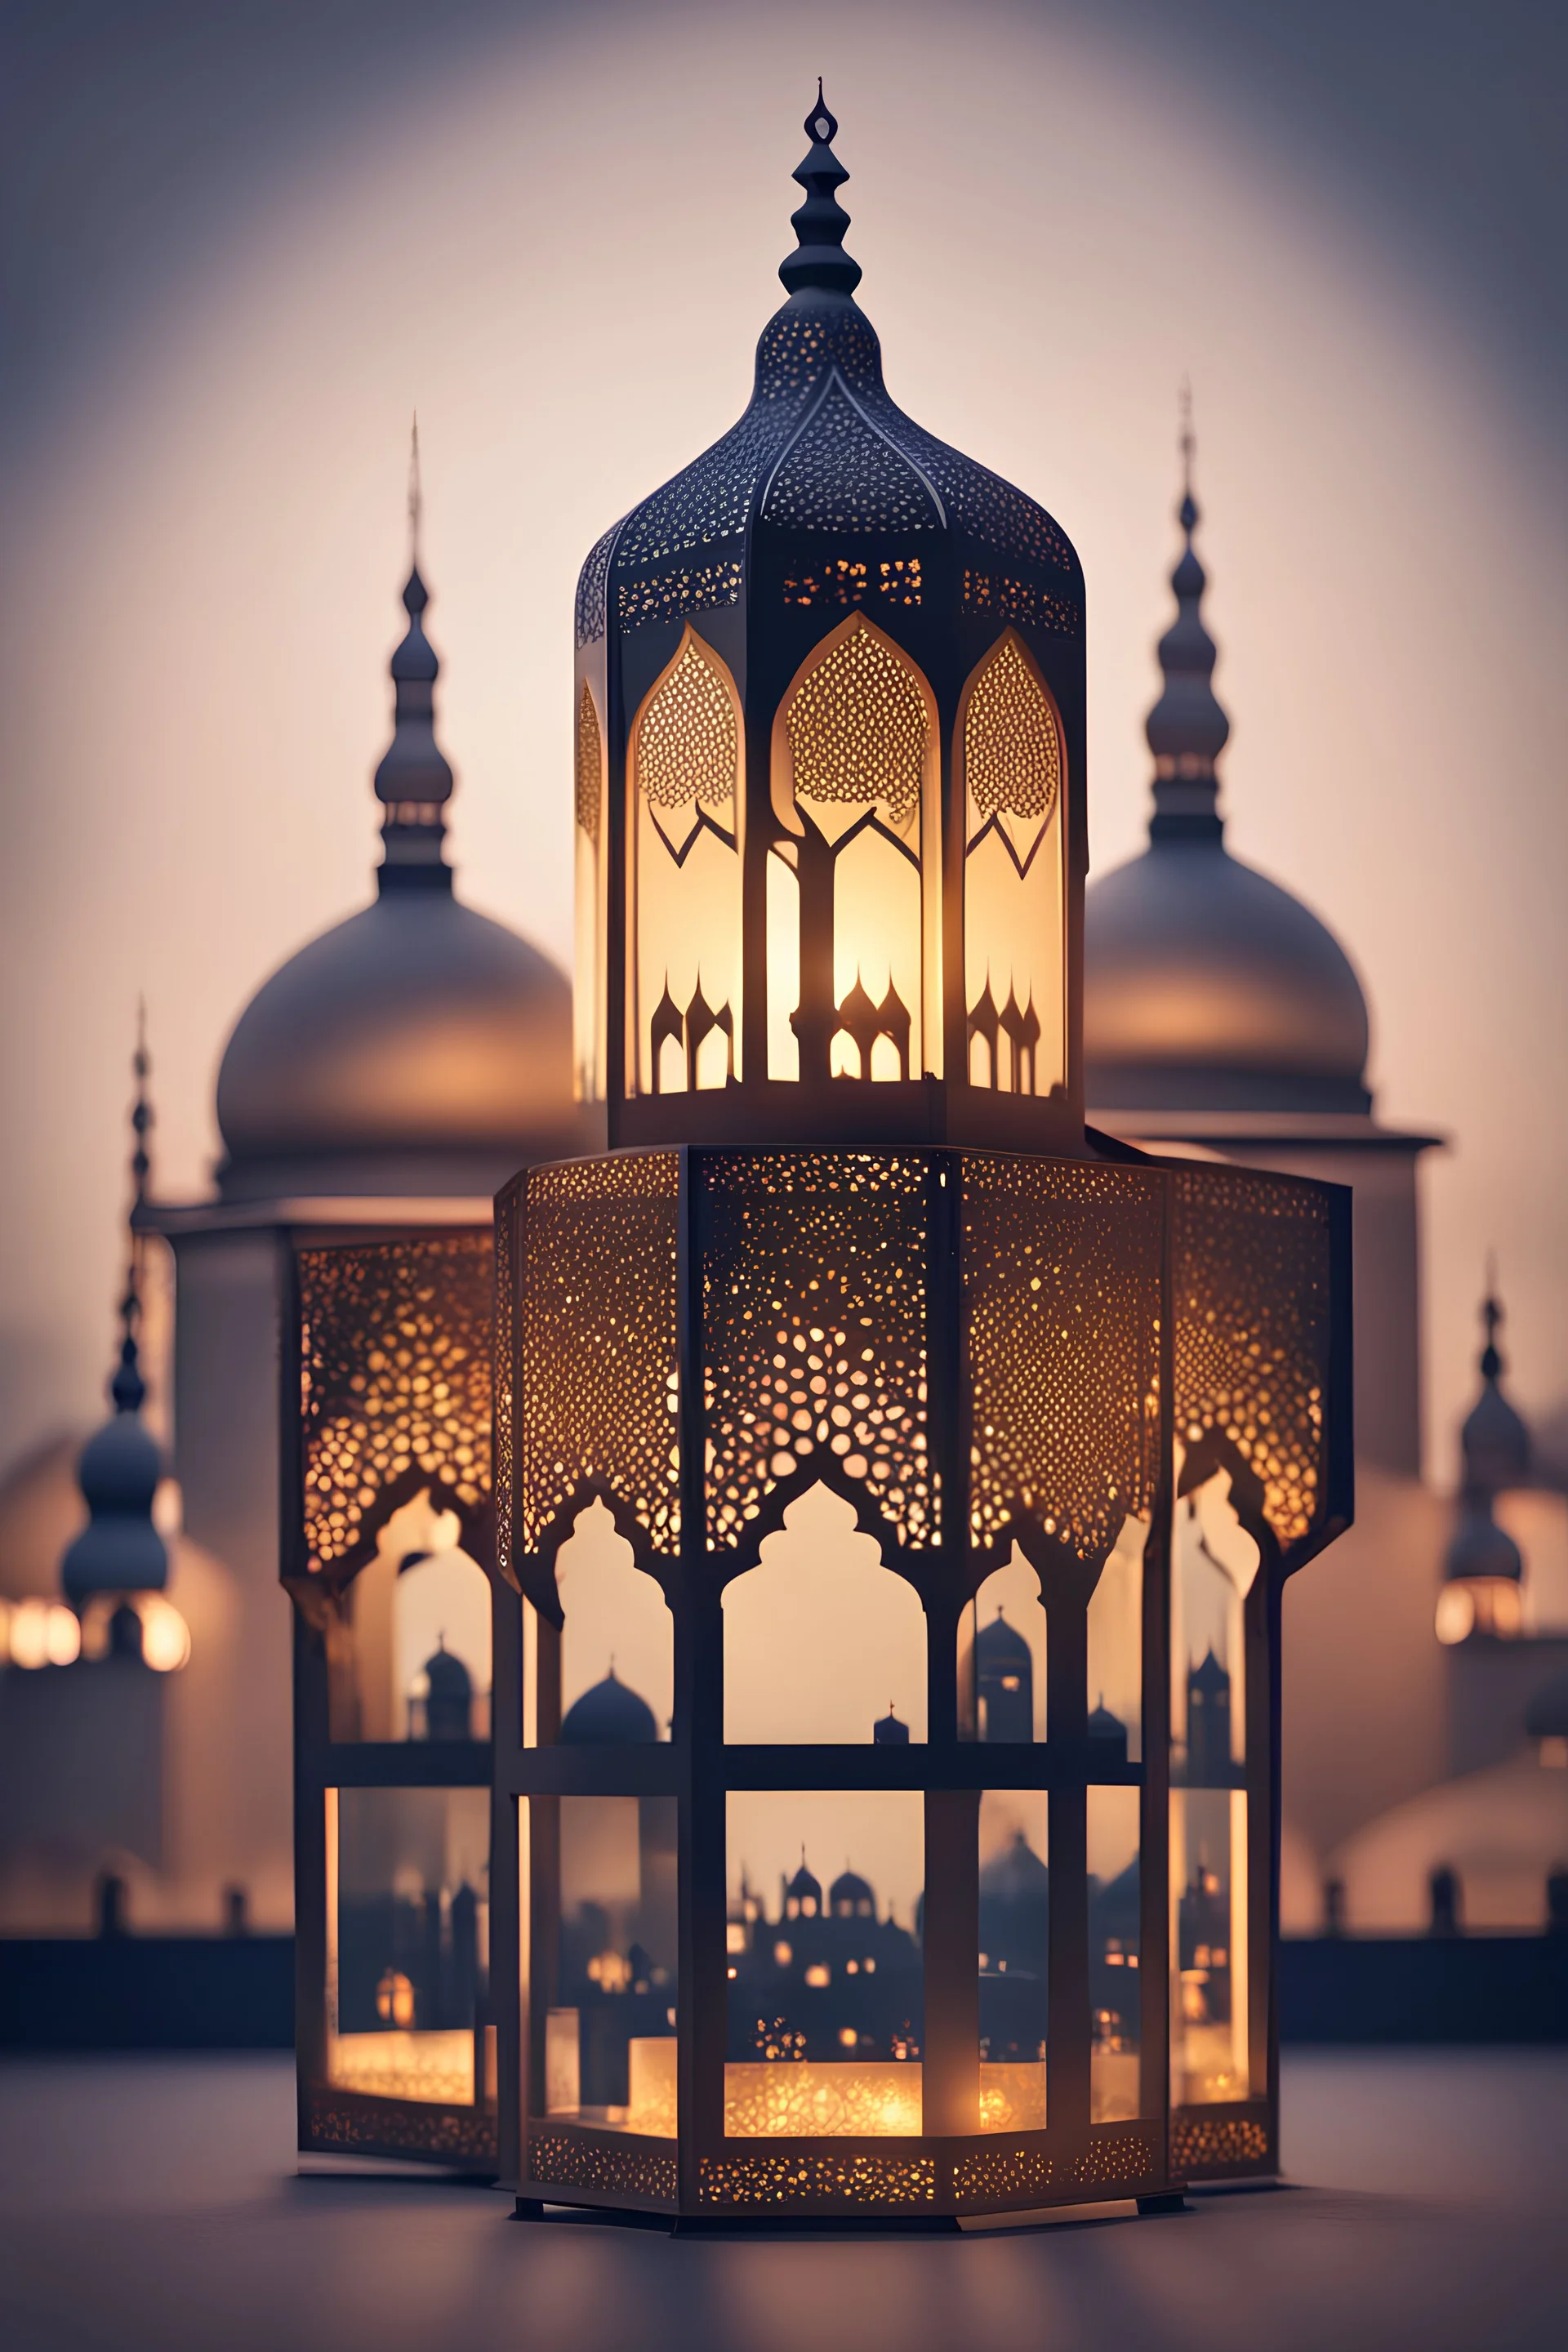 Ramadan lantern with mosque